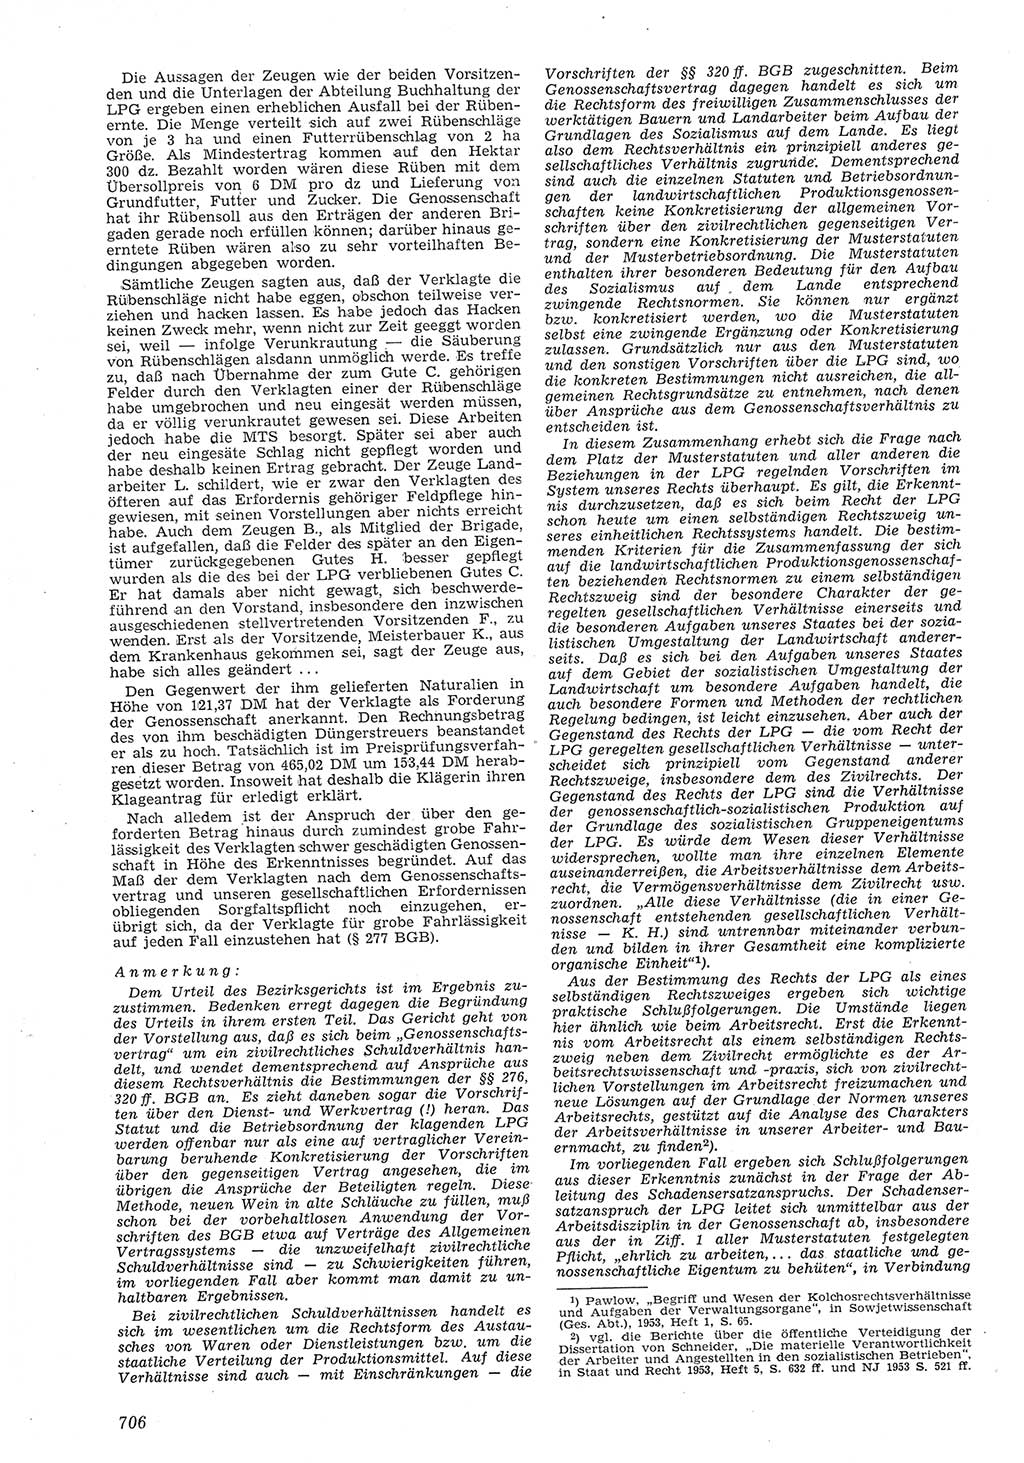 Neue Justiz (NJ), Zeitschrift für Recht und Rechtswissenschaft [Deutsche Demokratische Republik (DDR)], 8. Jahrgang 1954, Seite 706 (NJ DDR 1954, S. 706)